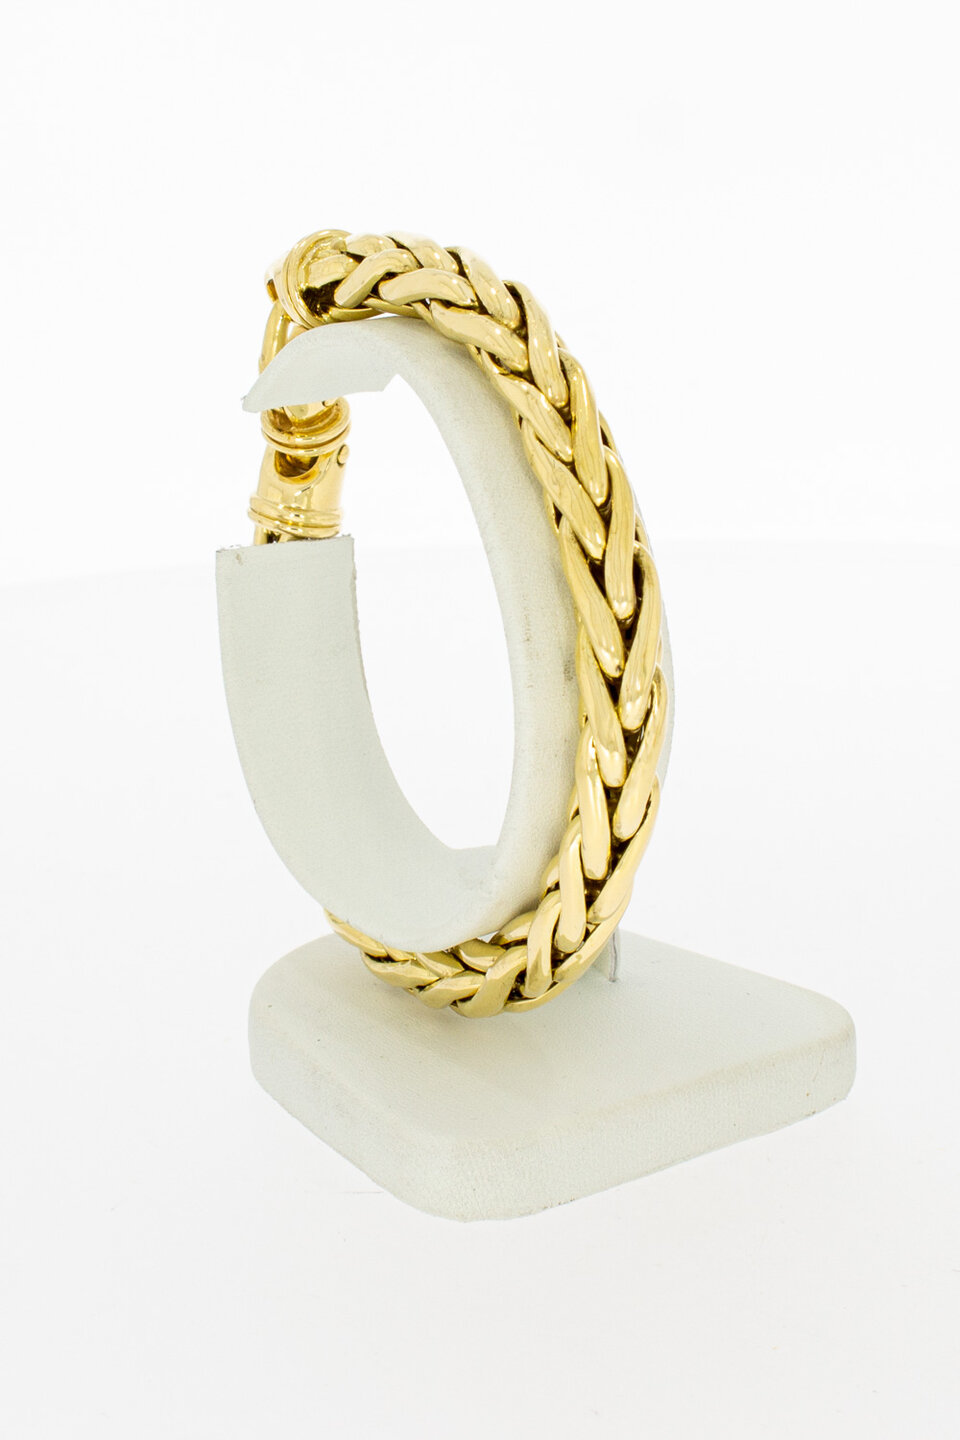 18 Karaat Vossenstaart armband goud - 19,8 cm